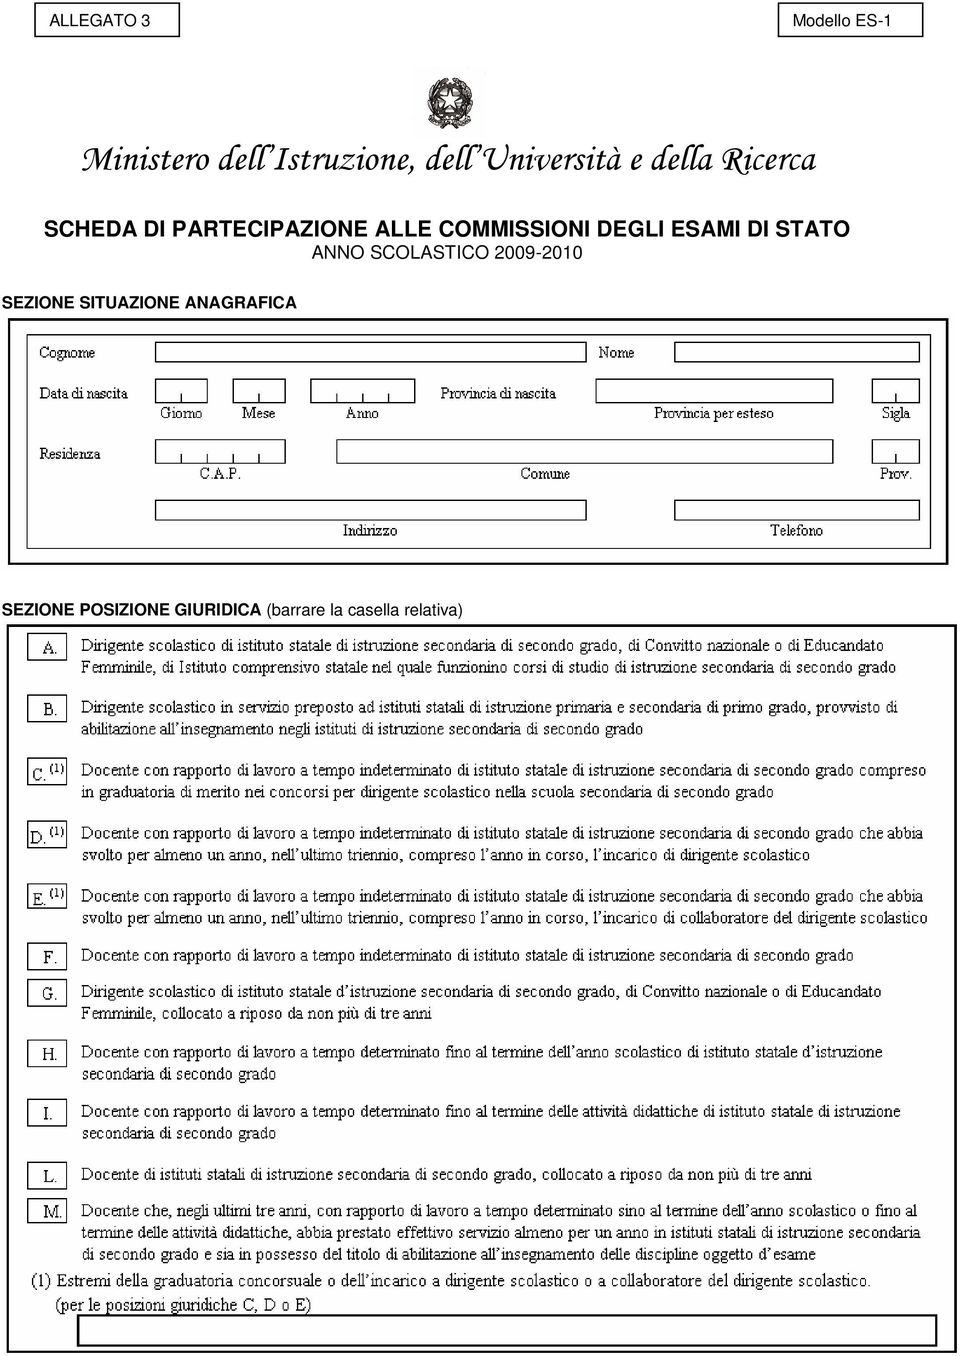 COMMISSIONI DEGLI ESAMI DI STATO ANNO SCOLASTICO 2009-2010